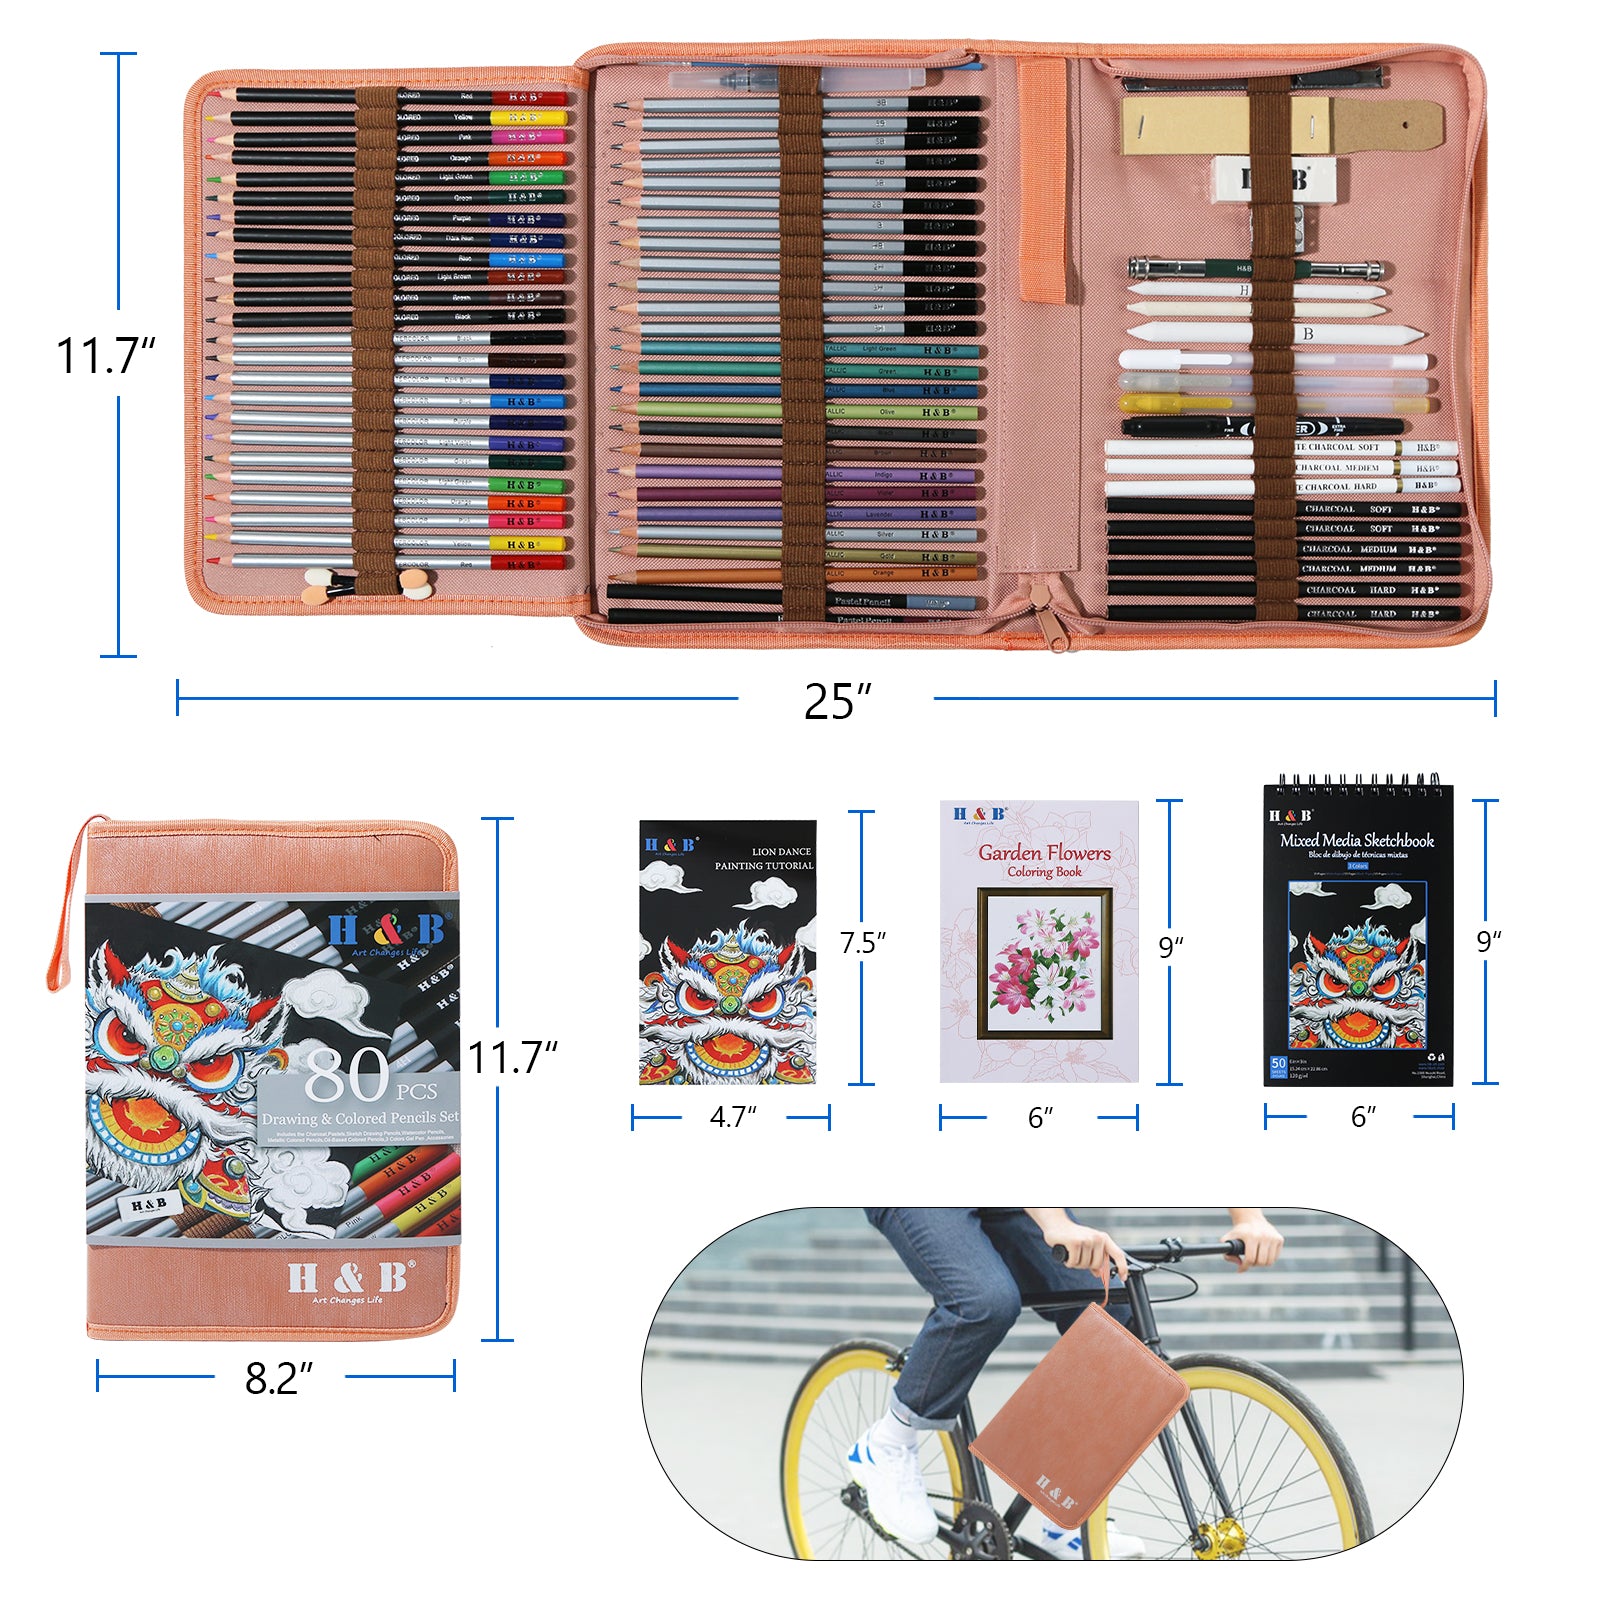 H & B 100 pcs Art Supplies,Drawing Colored Pencils kit,Art Set with Sk —  CHIMIYA